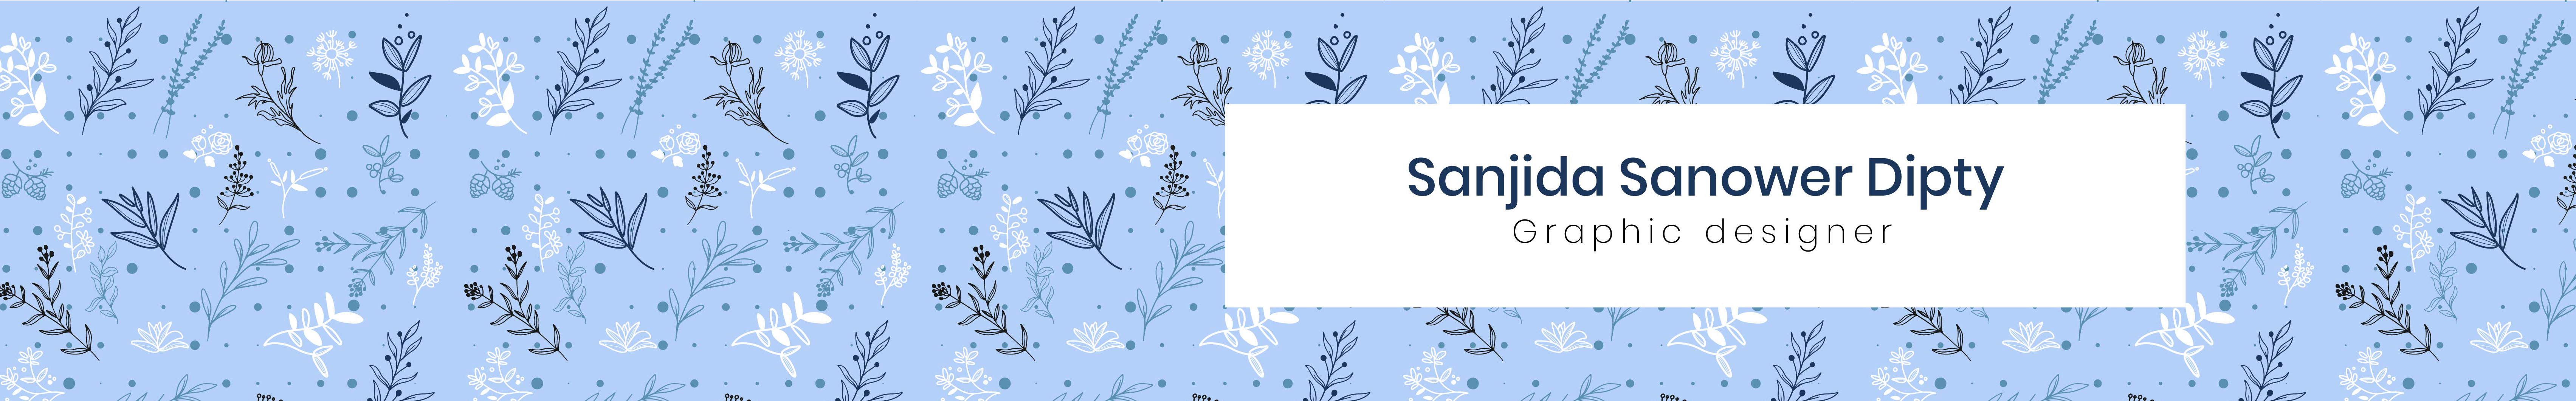 Sanjida Sanower Dipty profil başlığı